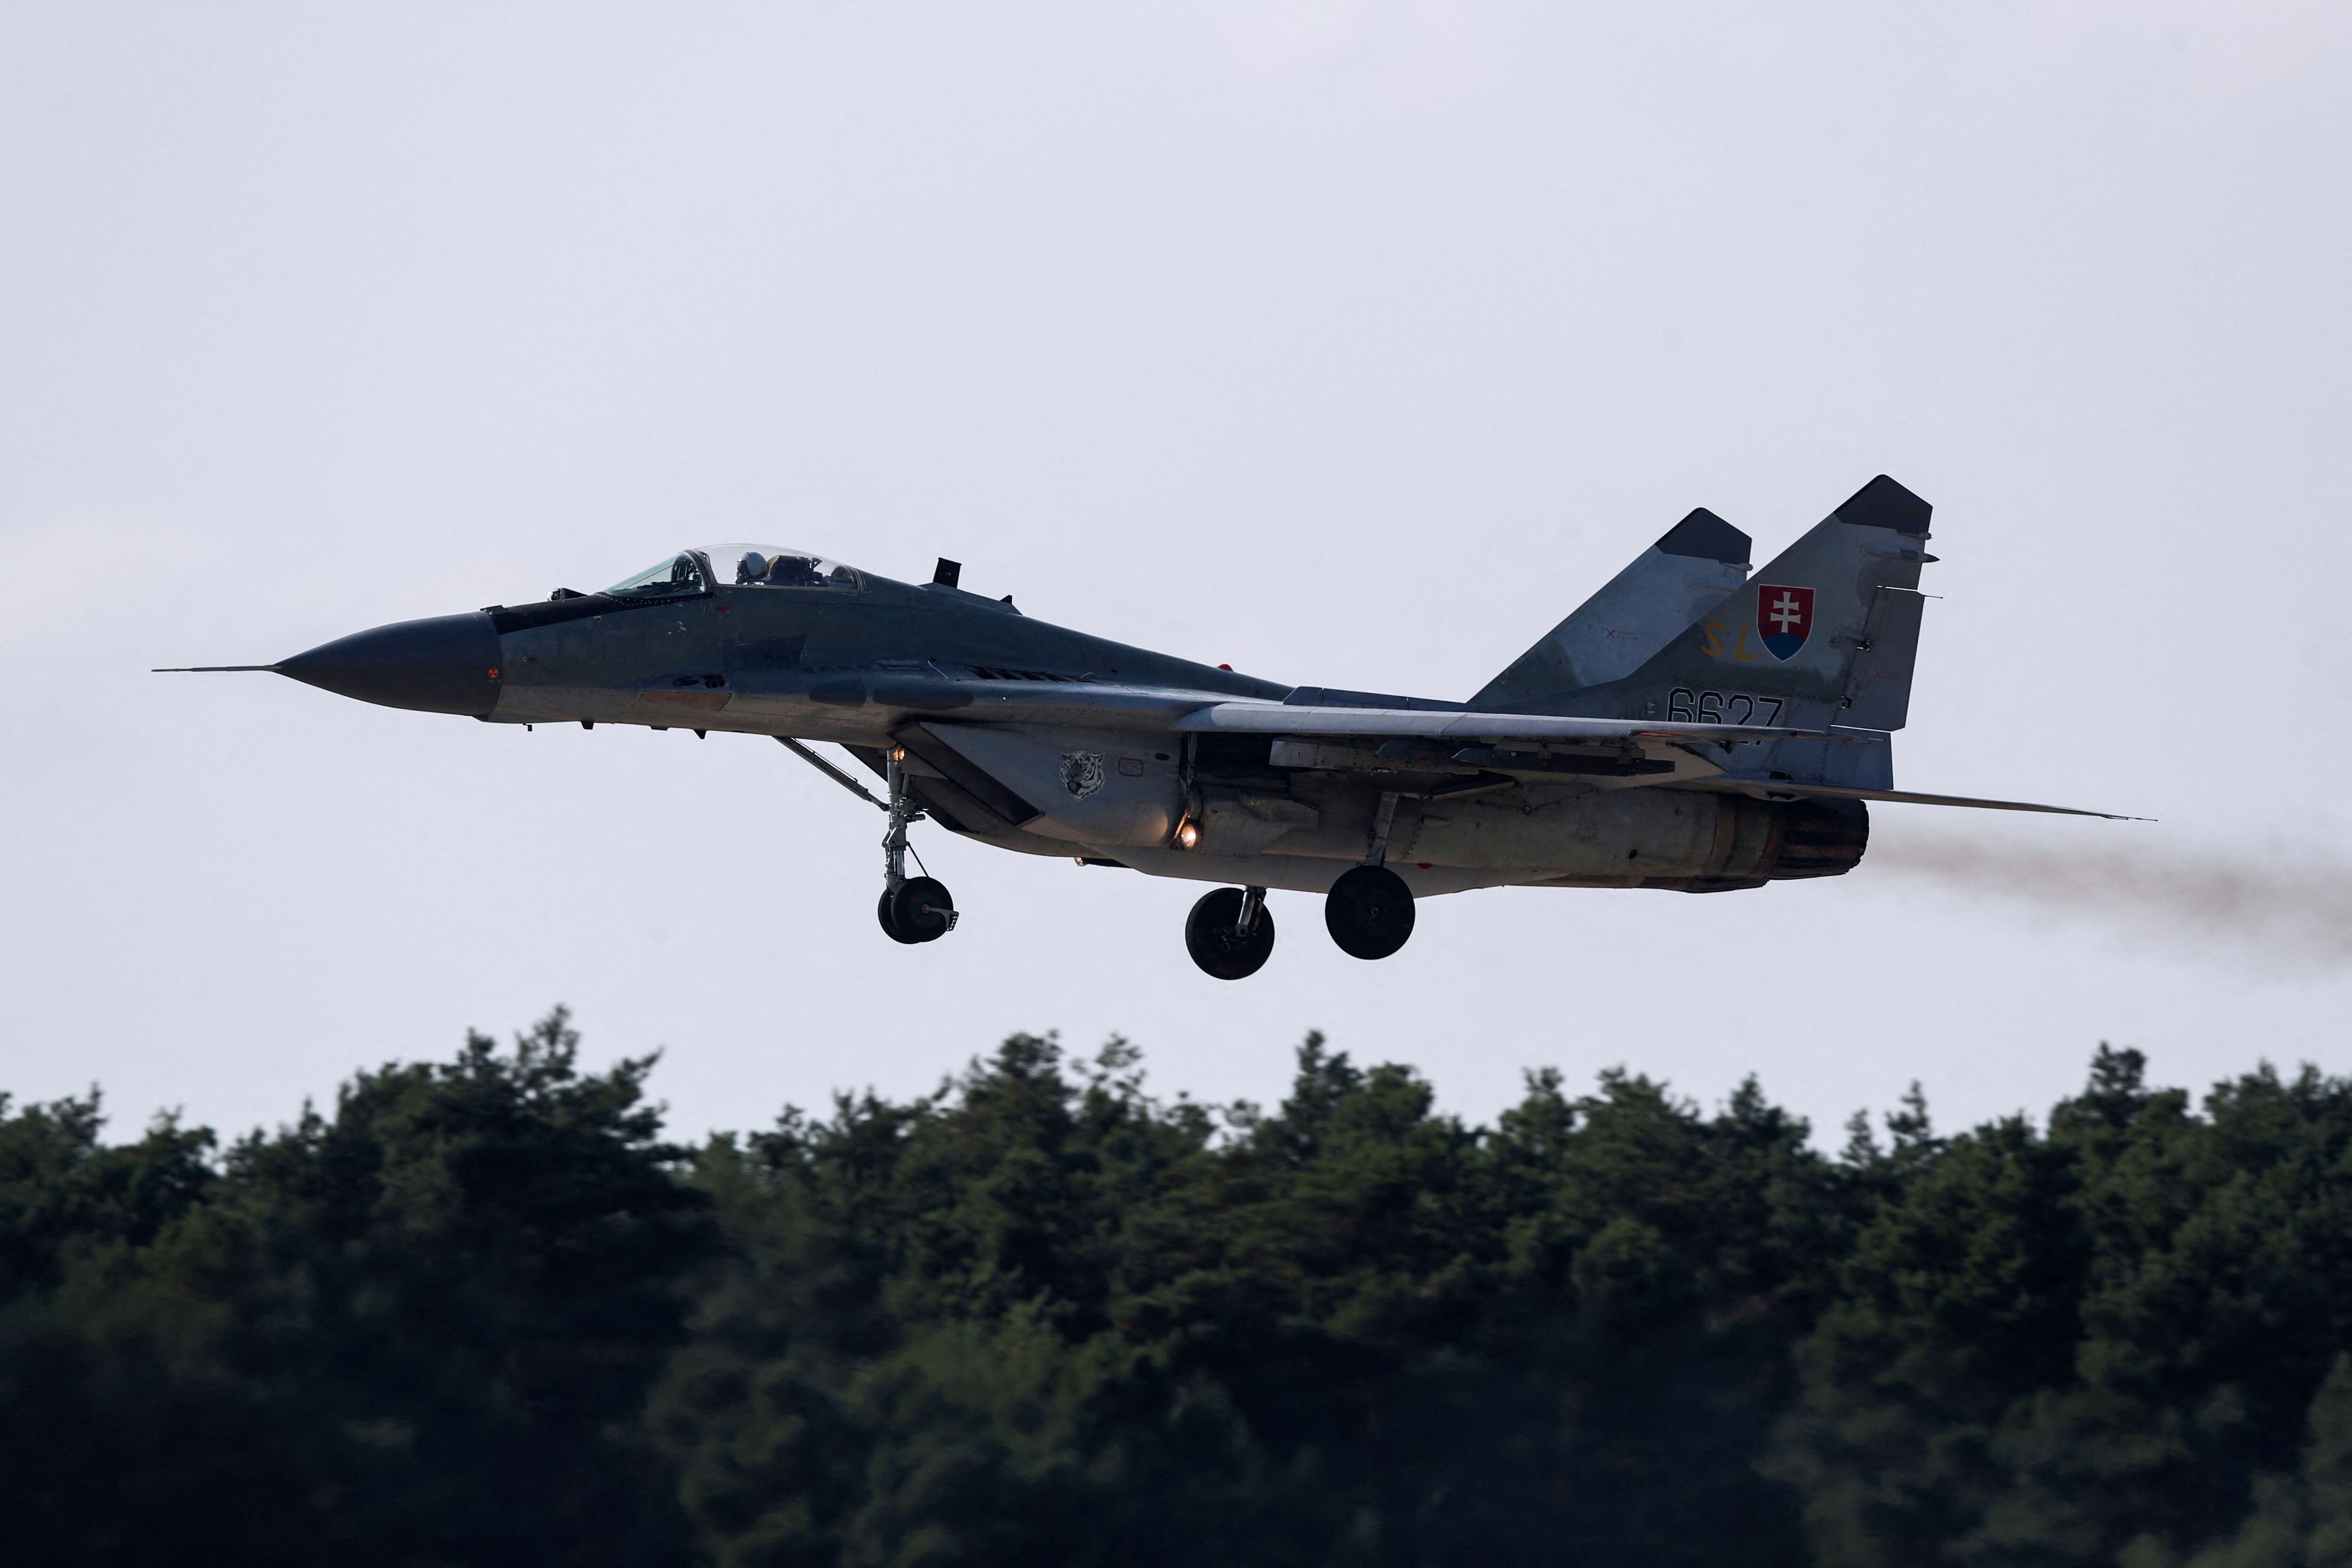 Un caza MiG-29 de fabricación rusa vuela cerca de la base aérea de Malacky, cerca de Malacky, Eslovaquia, 27 de agosto de 2022. (REUTERS/David W Cerny)